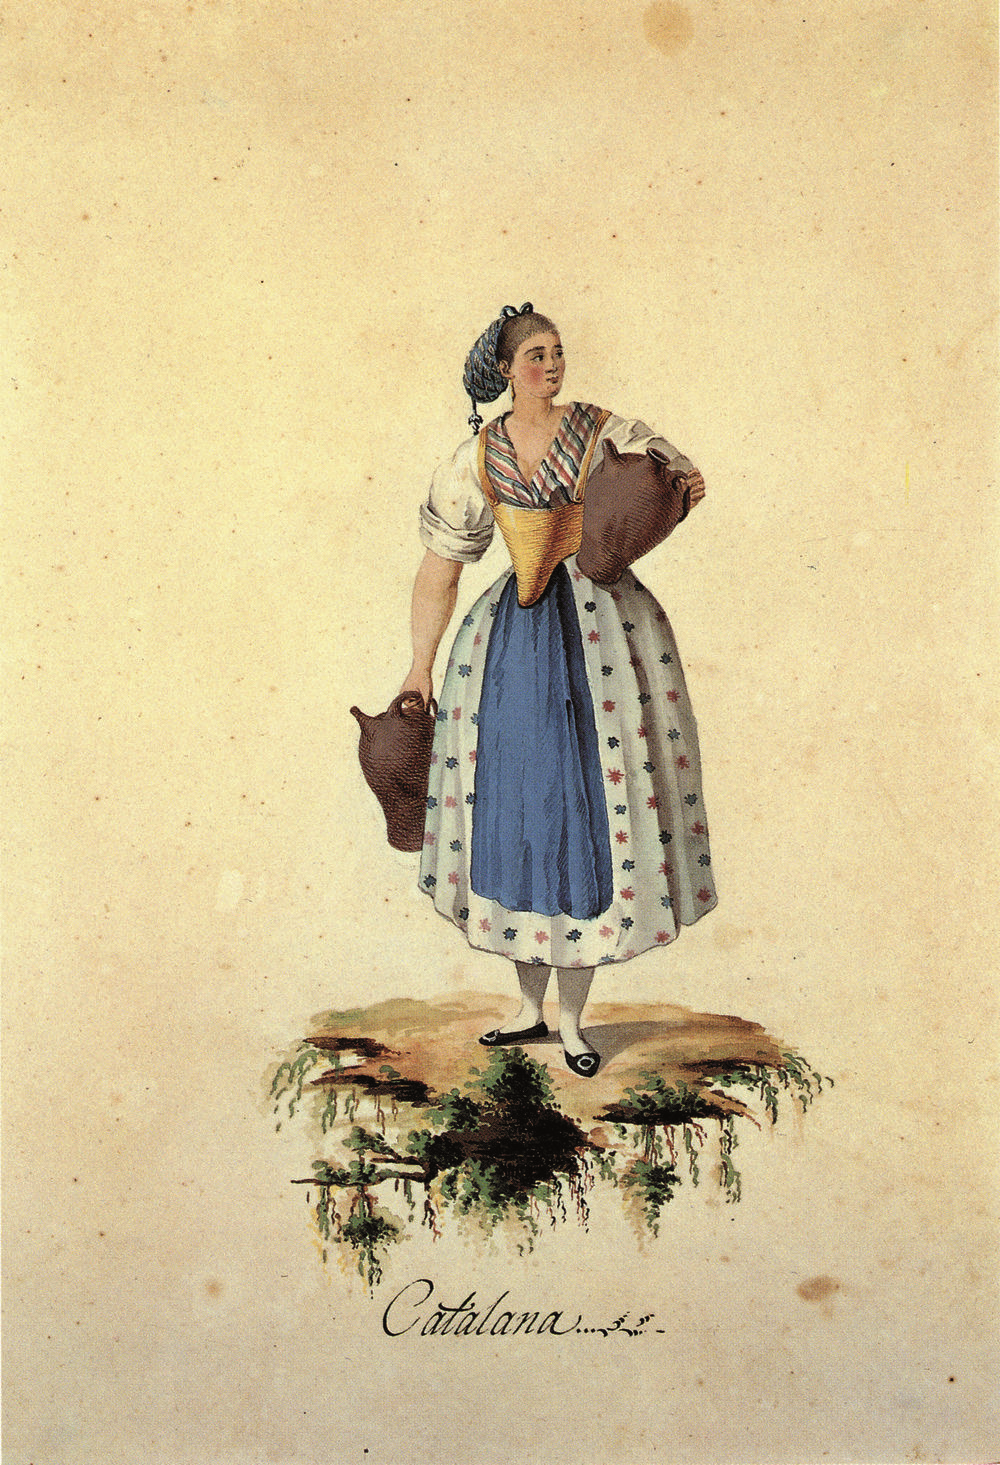 Vestuari femení català del segle XVIII. Font Museu del Disseny de Barcelona